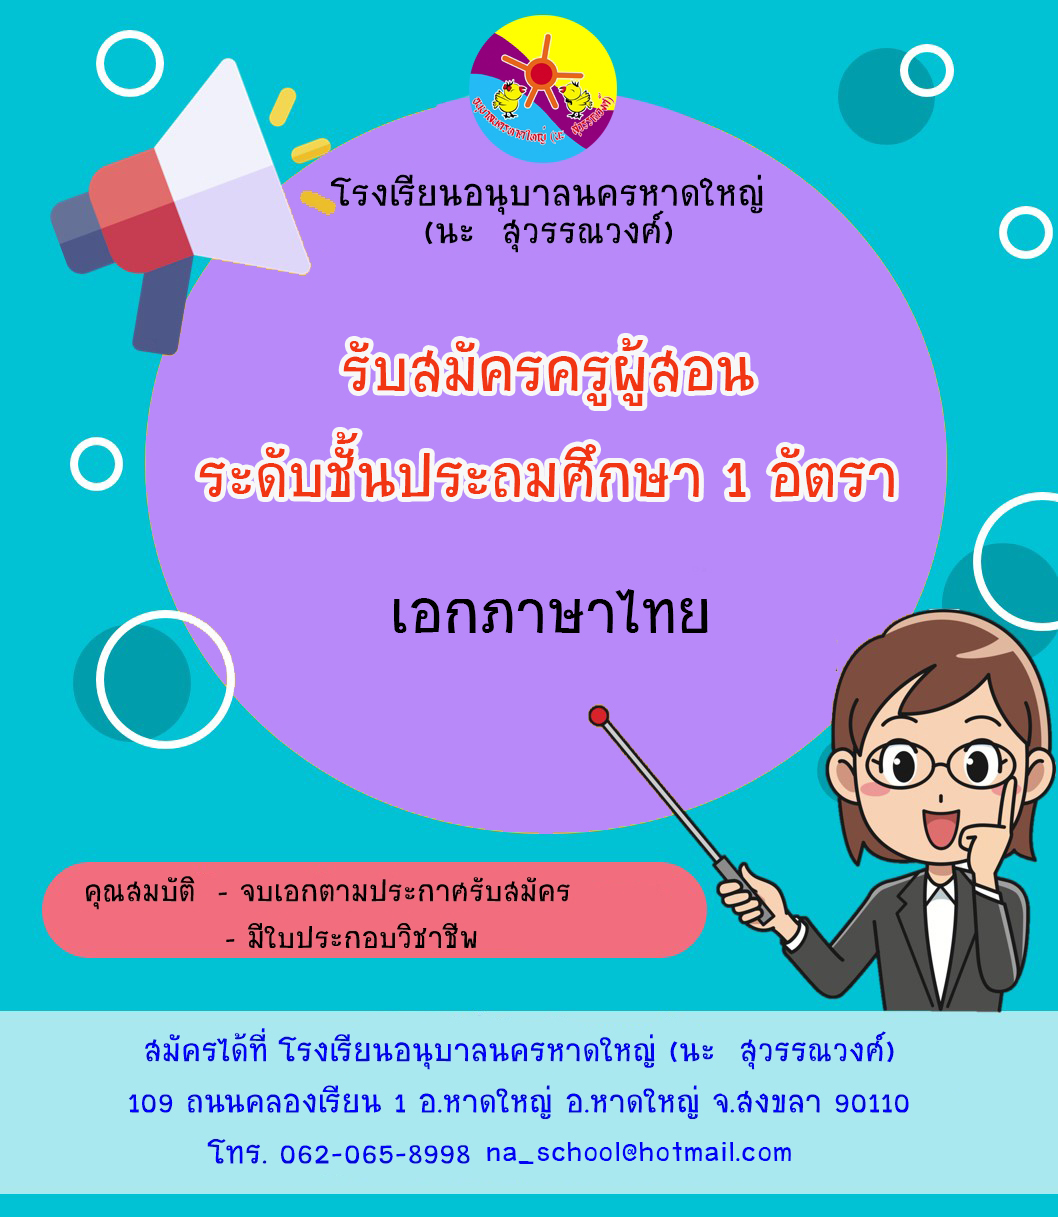 รับสมัครครูภาษาไทย